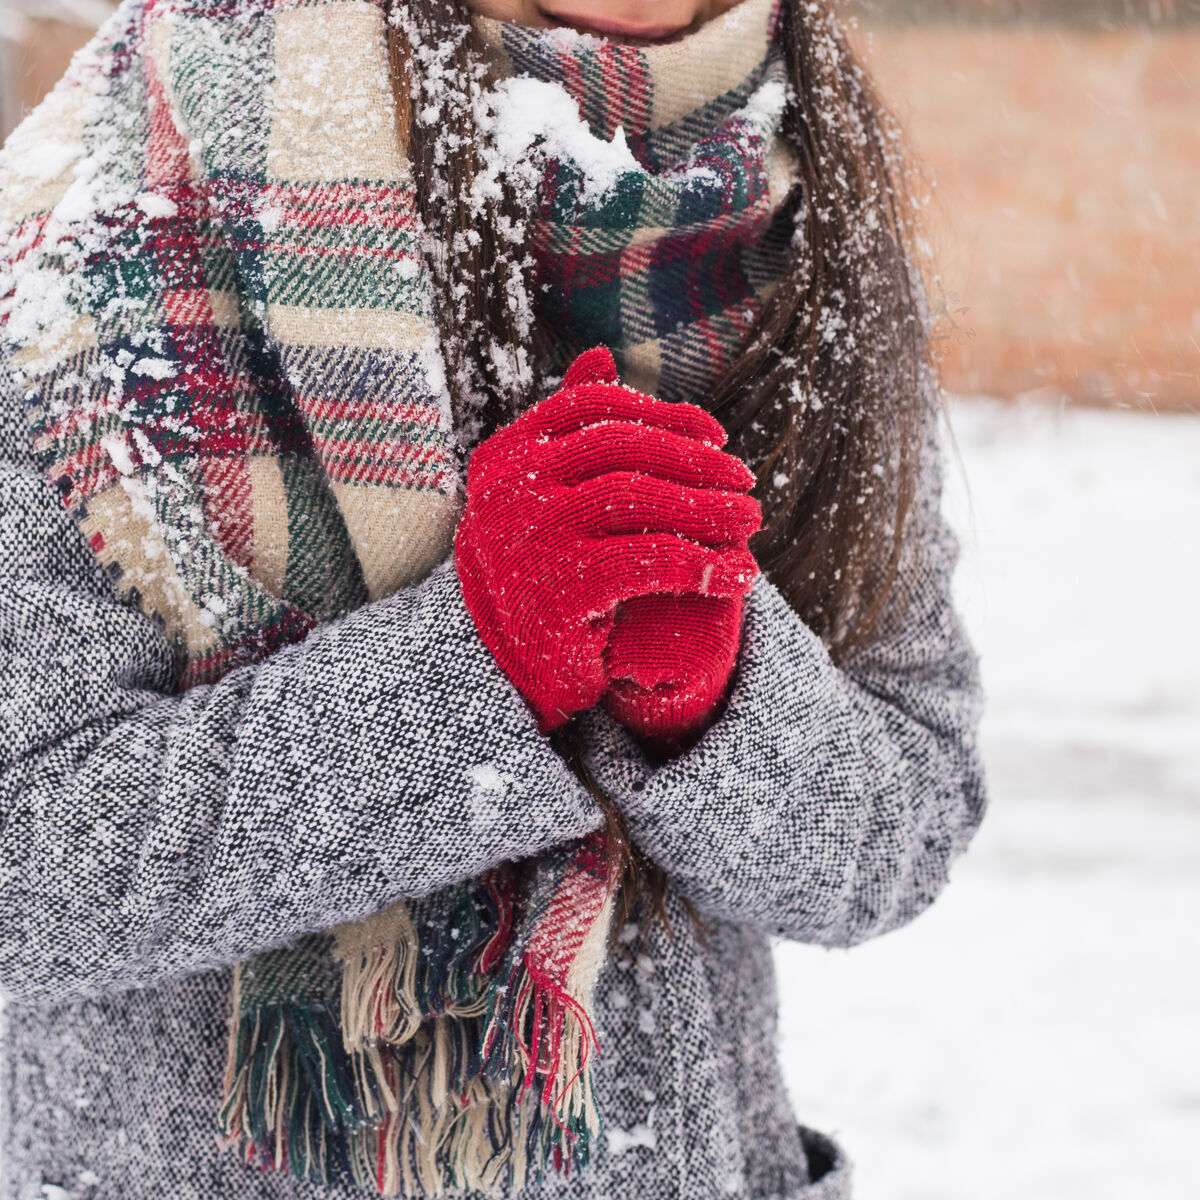 乐趣无忧无虑的女孩 在冬天欢笑白天.室外一位年轻的欧洲妇女在下雪的早晨在房子附近偷情的照片享受黑发时尚